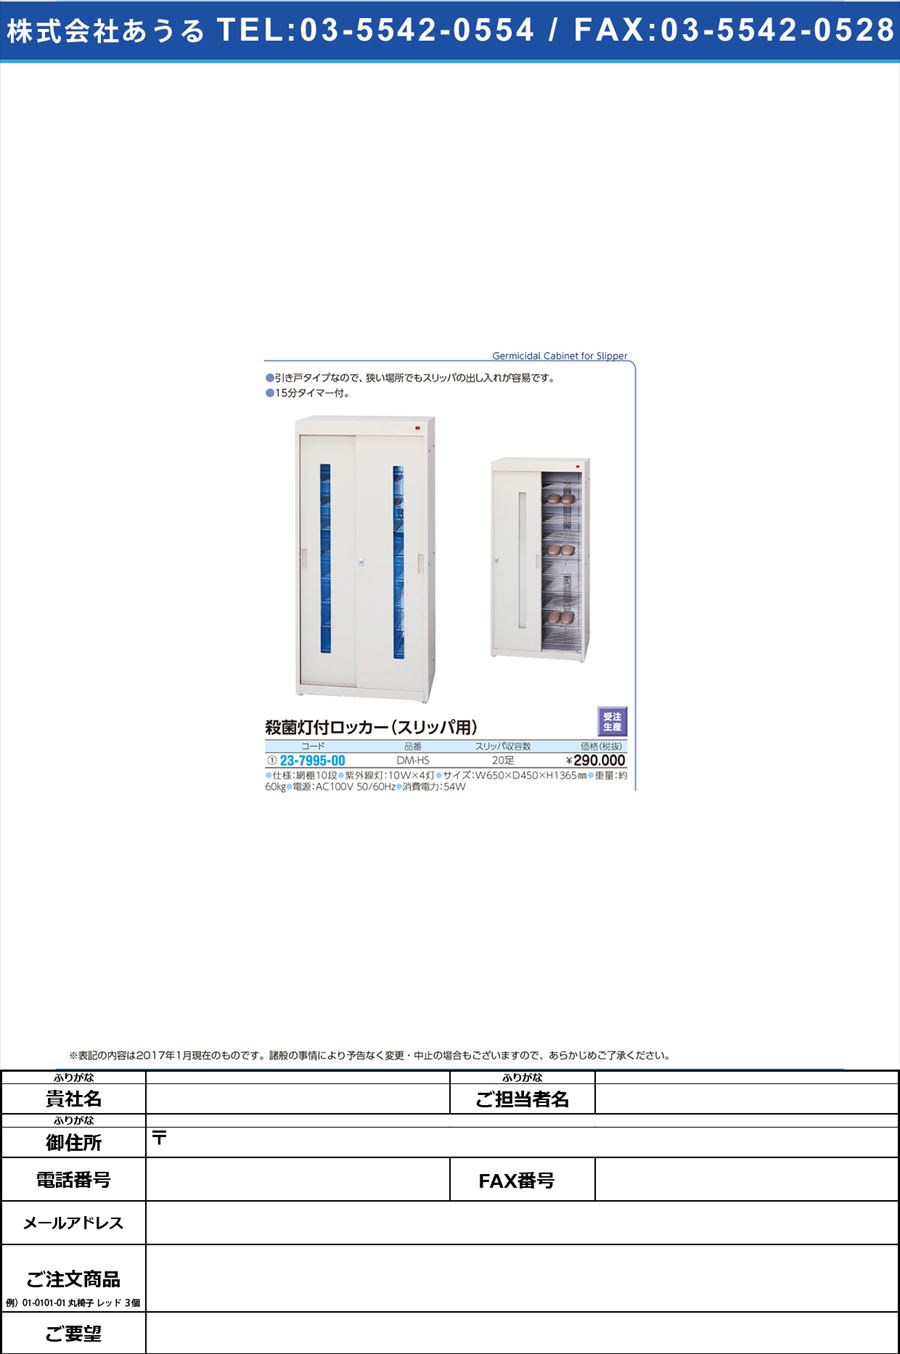 殺菌線スリッパロッカー ｻｯｷﾝｾﾝｽﾘｯﾊﾟﾛｯｶｰ DM-HS(23-7995-00)【1台単位】【2017年カタログ商品】